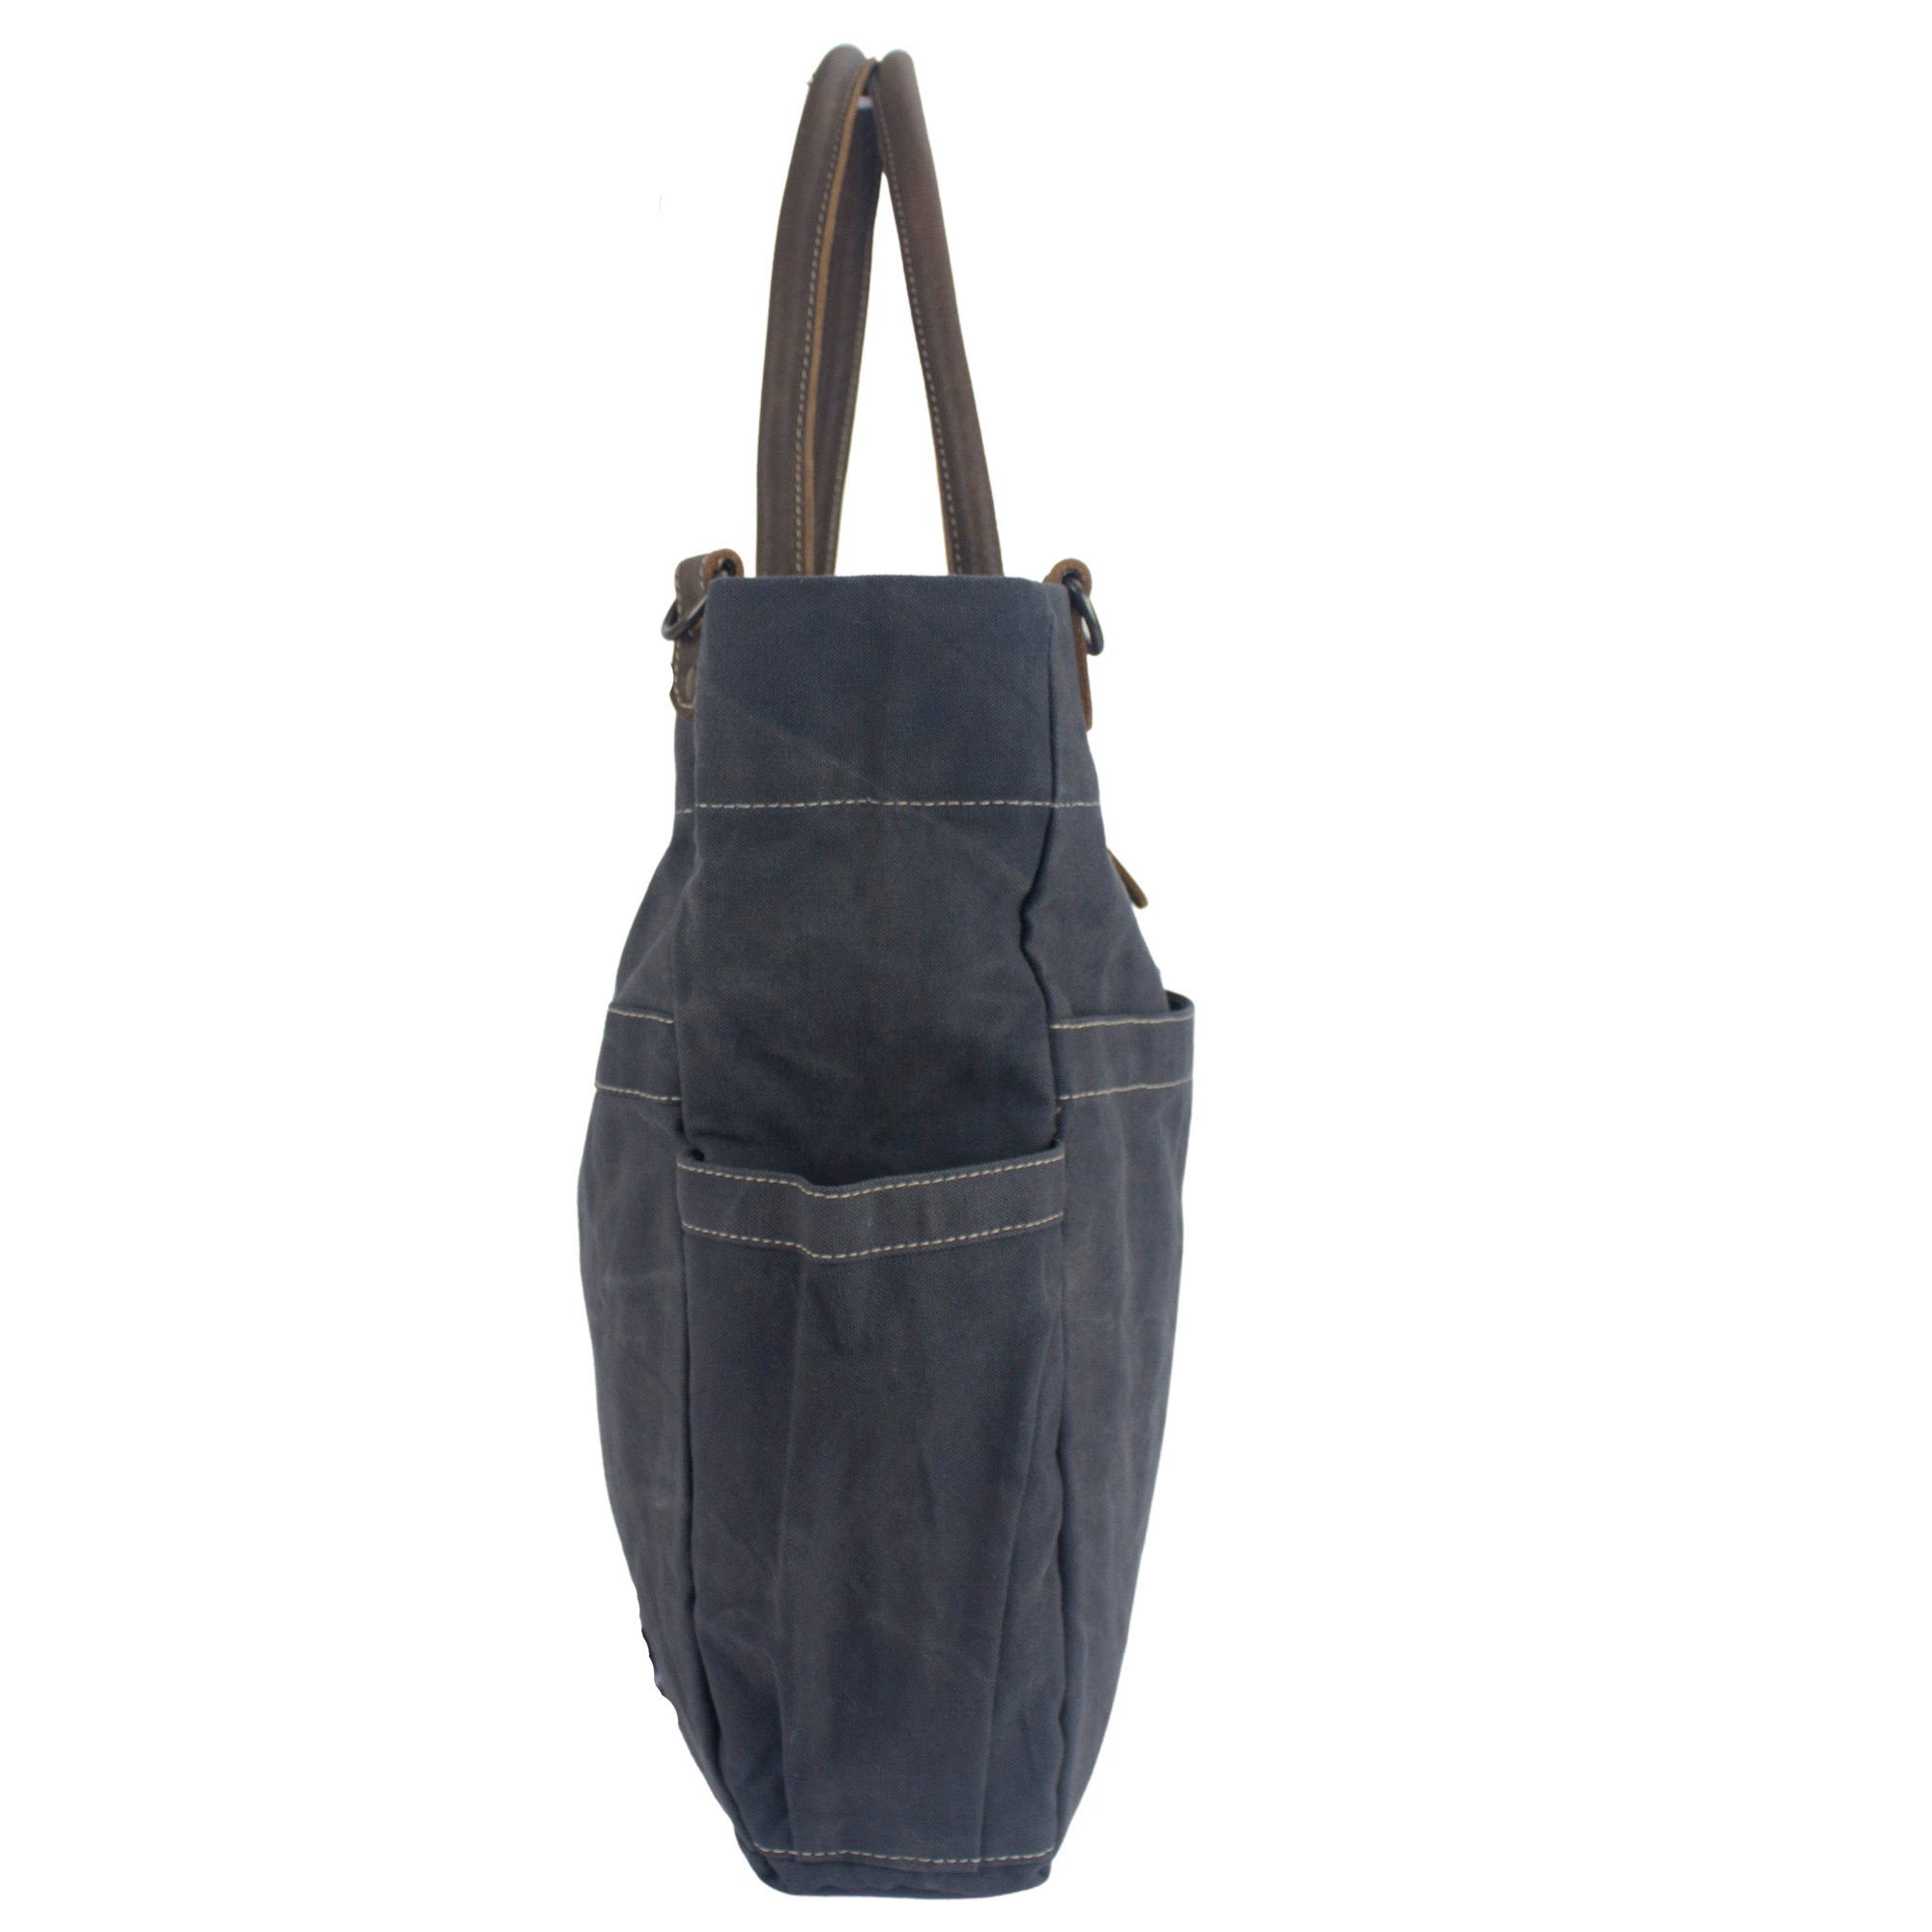 Sunsa Handtasche Damen Handtasche, Leder Handgriff Tasche verstellbare Henkel, umhänge schlicht Canvas Schultertasche, Schwarz Große dazu mit